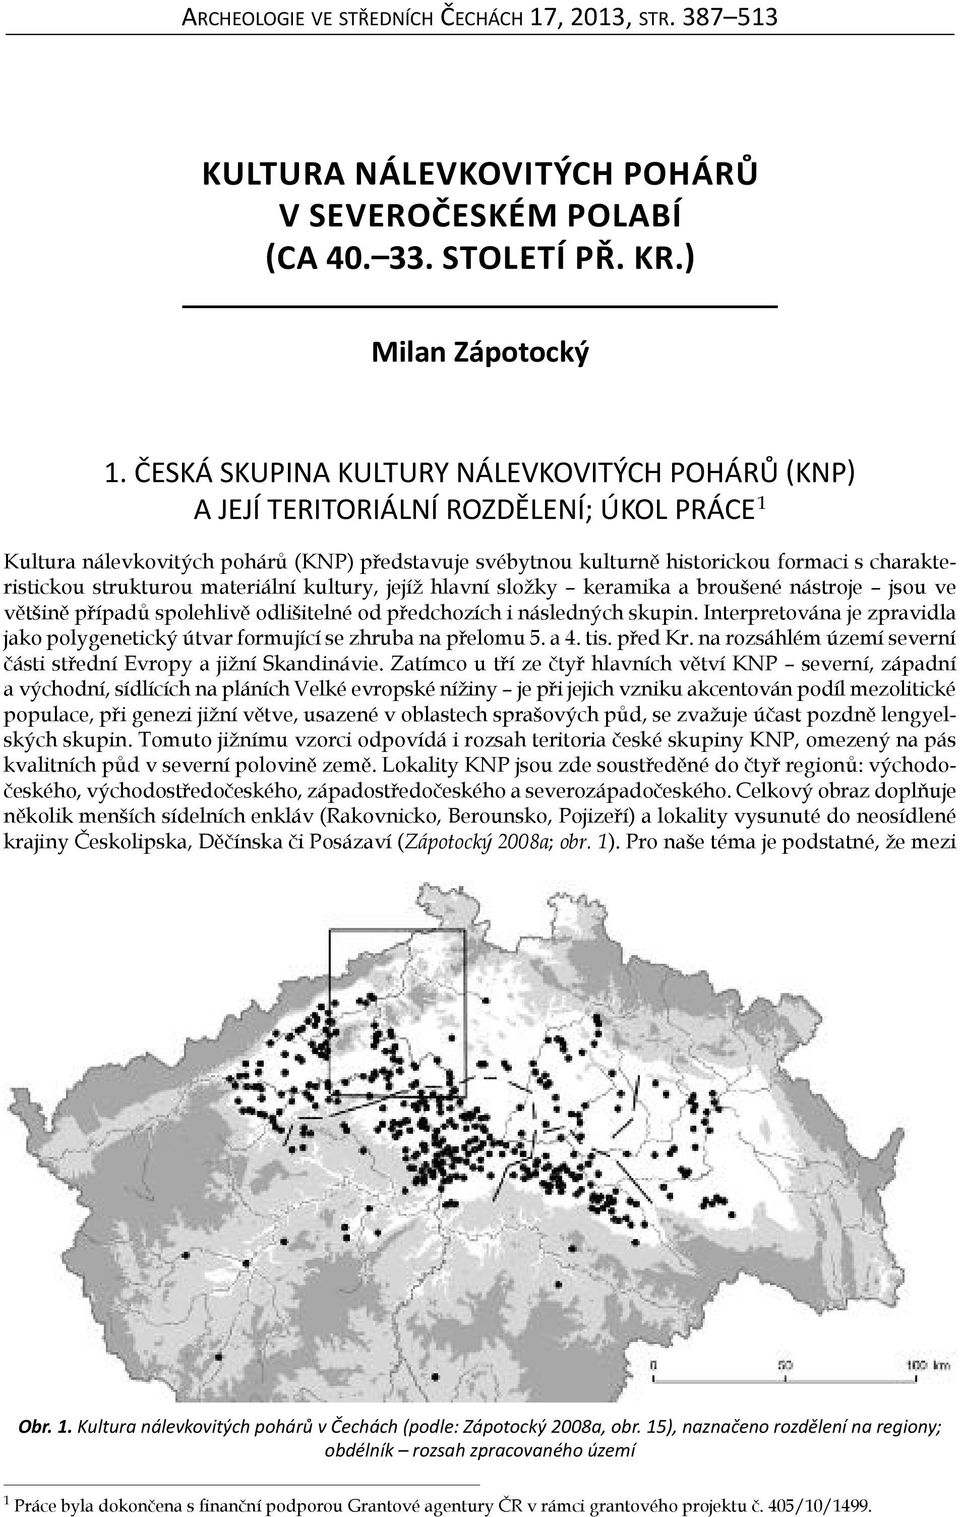 KulturanálevKovitýchpohárů v severočeskémpolabí (ca stoletípř.Kr.) - PDF  Stažení zdarma